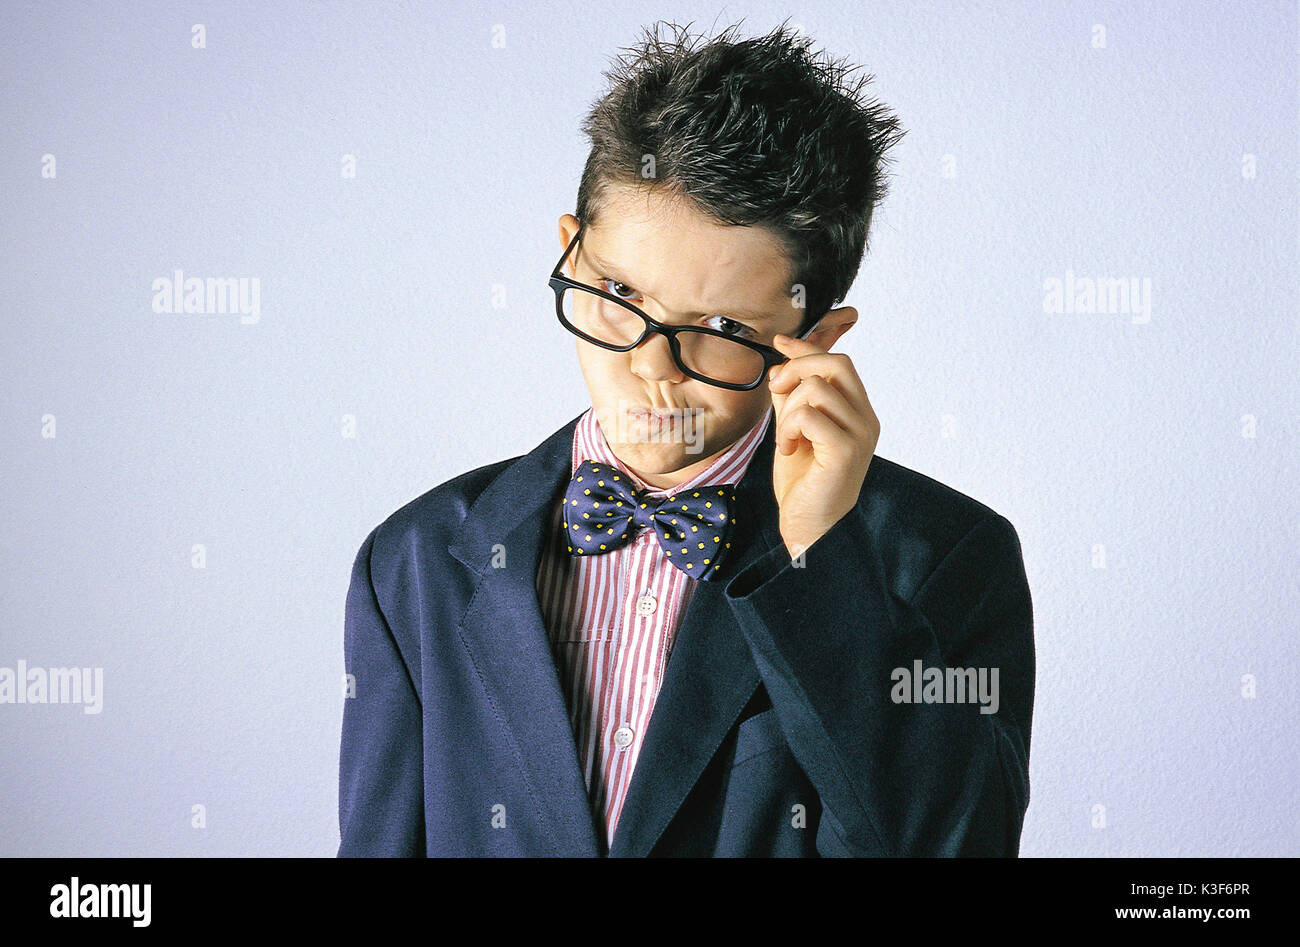 Kleine Jungen mit Bow Tie berührt mit der Hand die Brille Rahmen und zieht seinen Mund Stockfoto